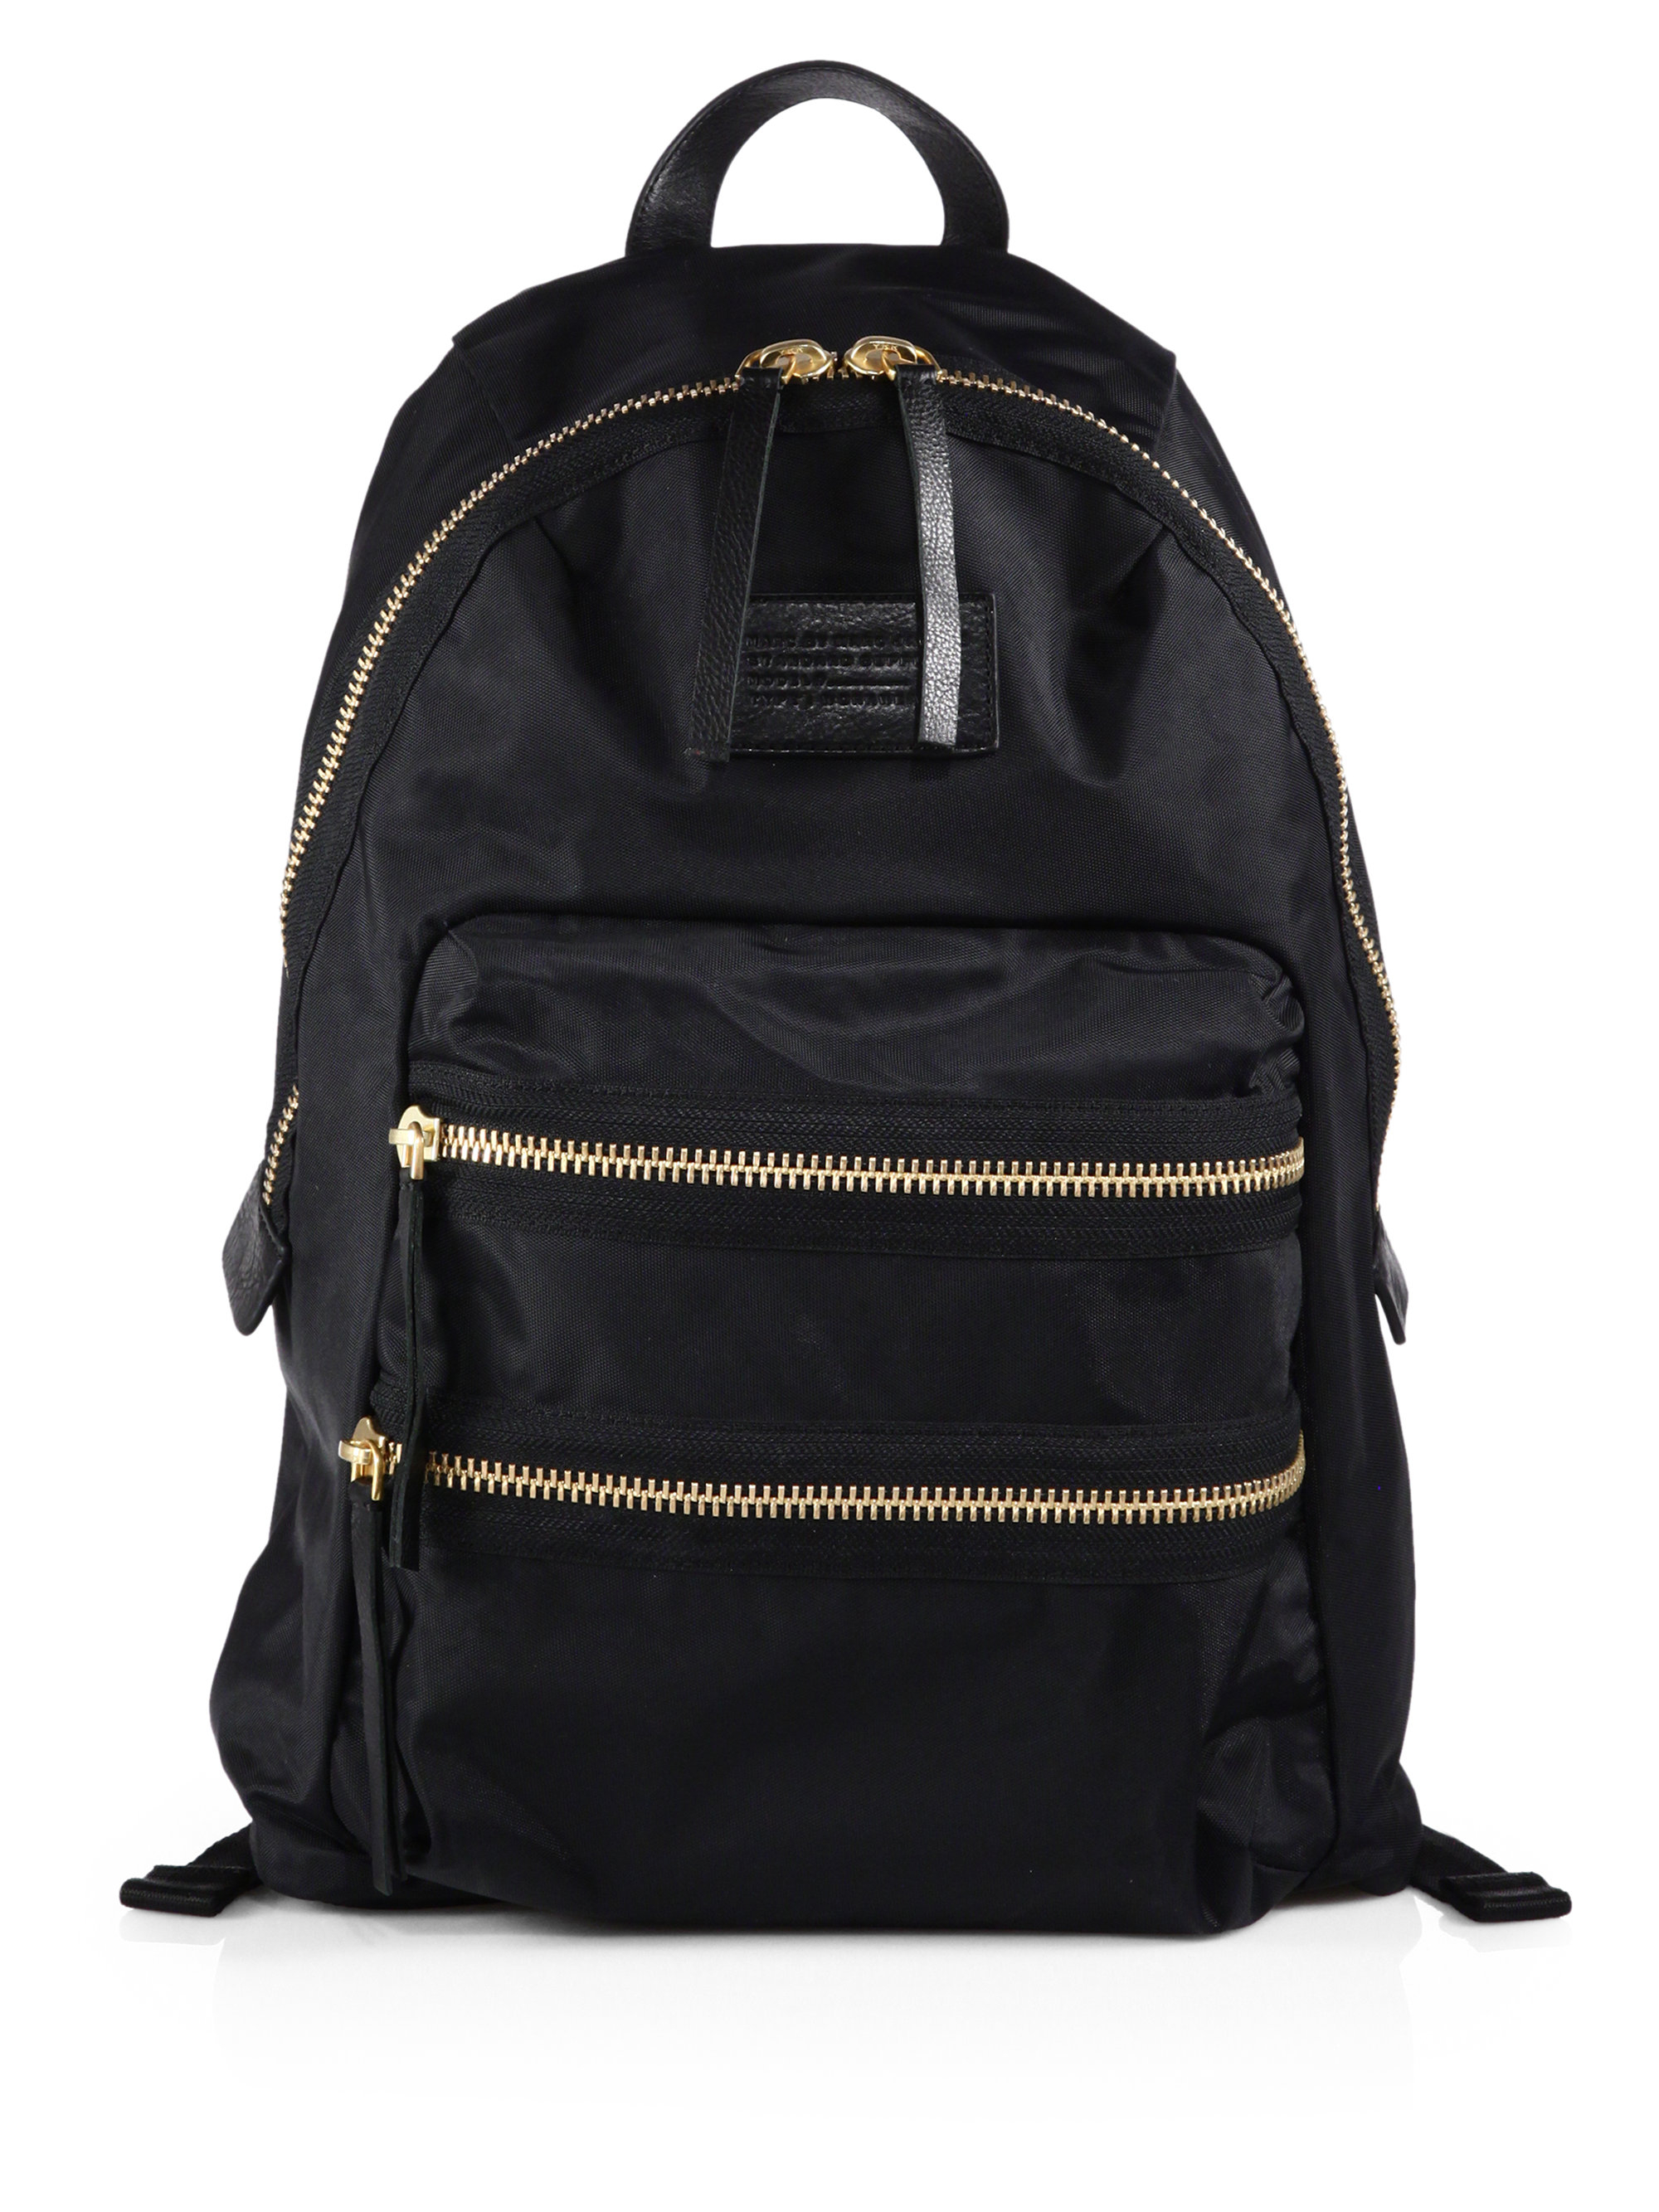 Black Nylon Backpack 45